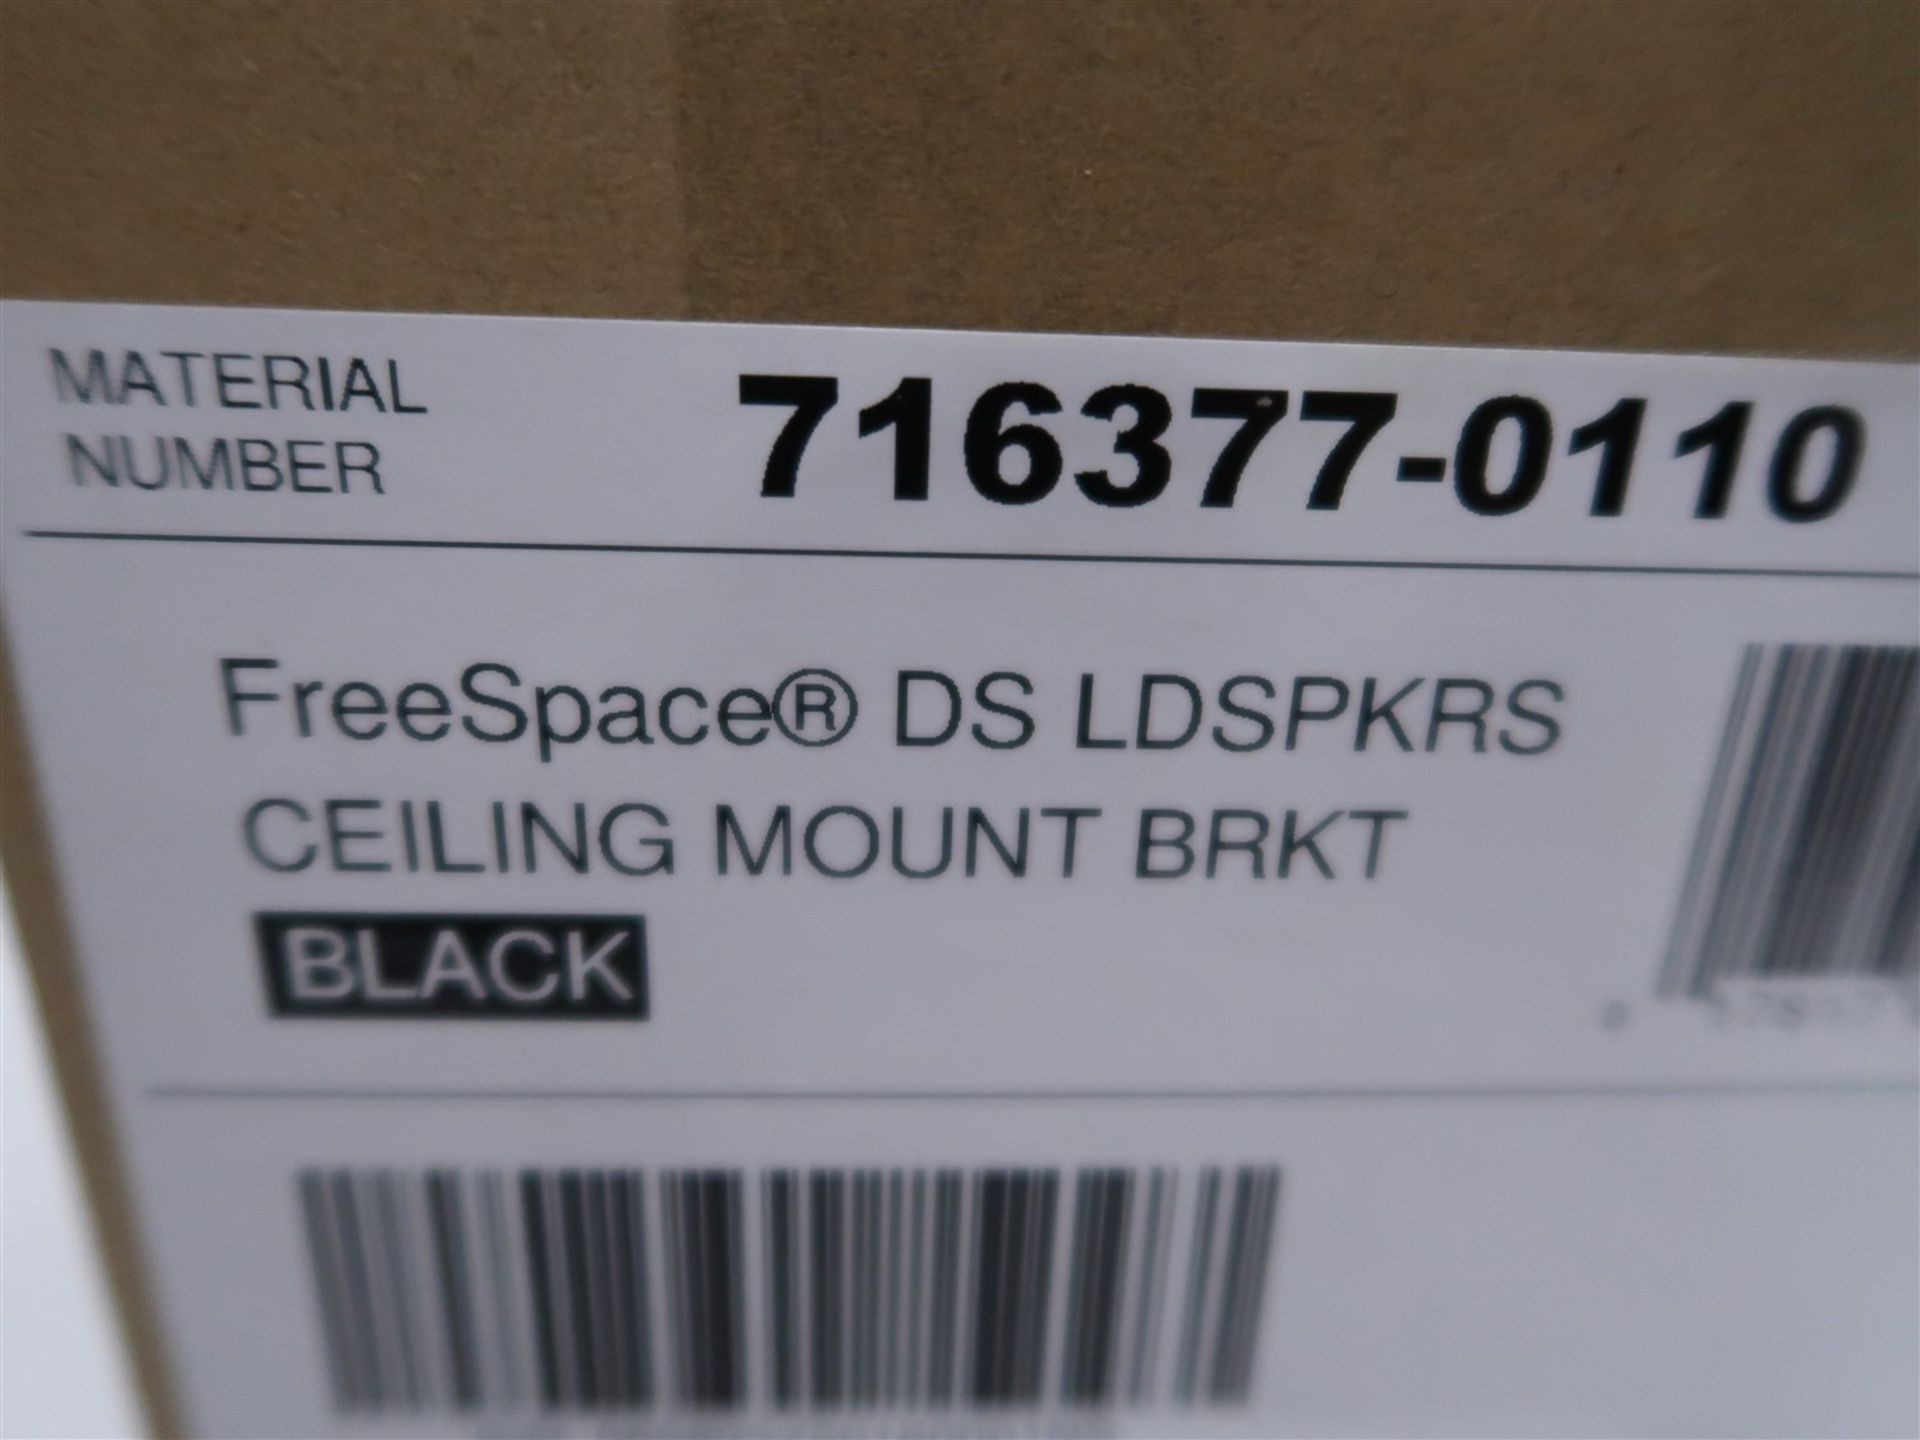 BOSE FREE SPACE DS LOUD SPEAKER CEILING MOUNT BRACKET BLACK (BNIB) - Image 2 of 3